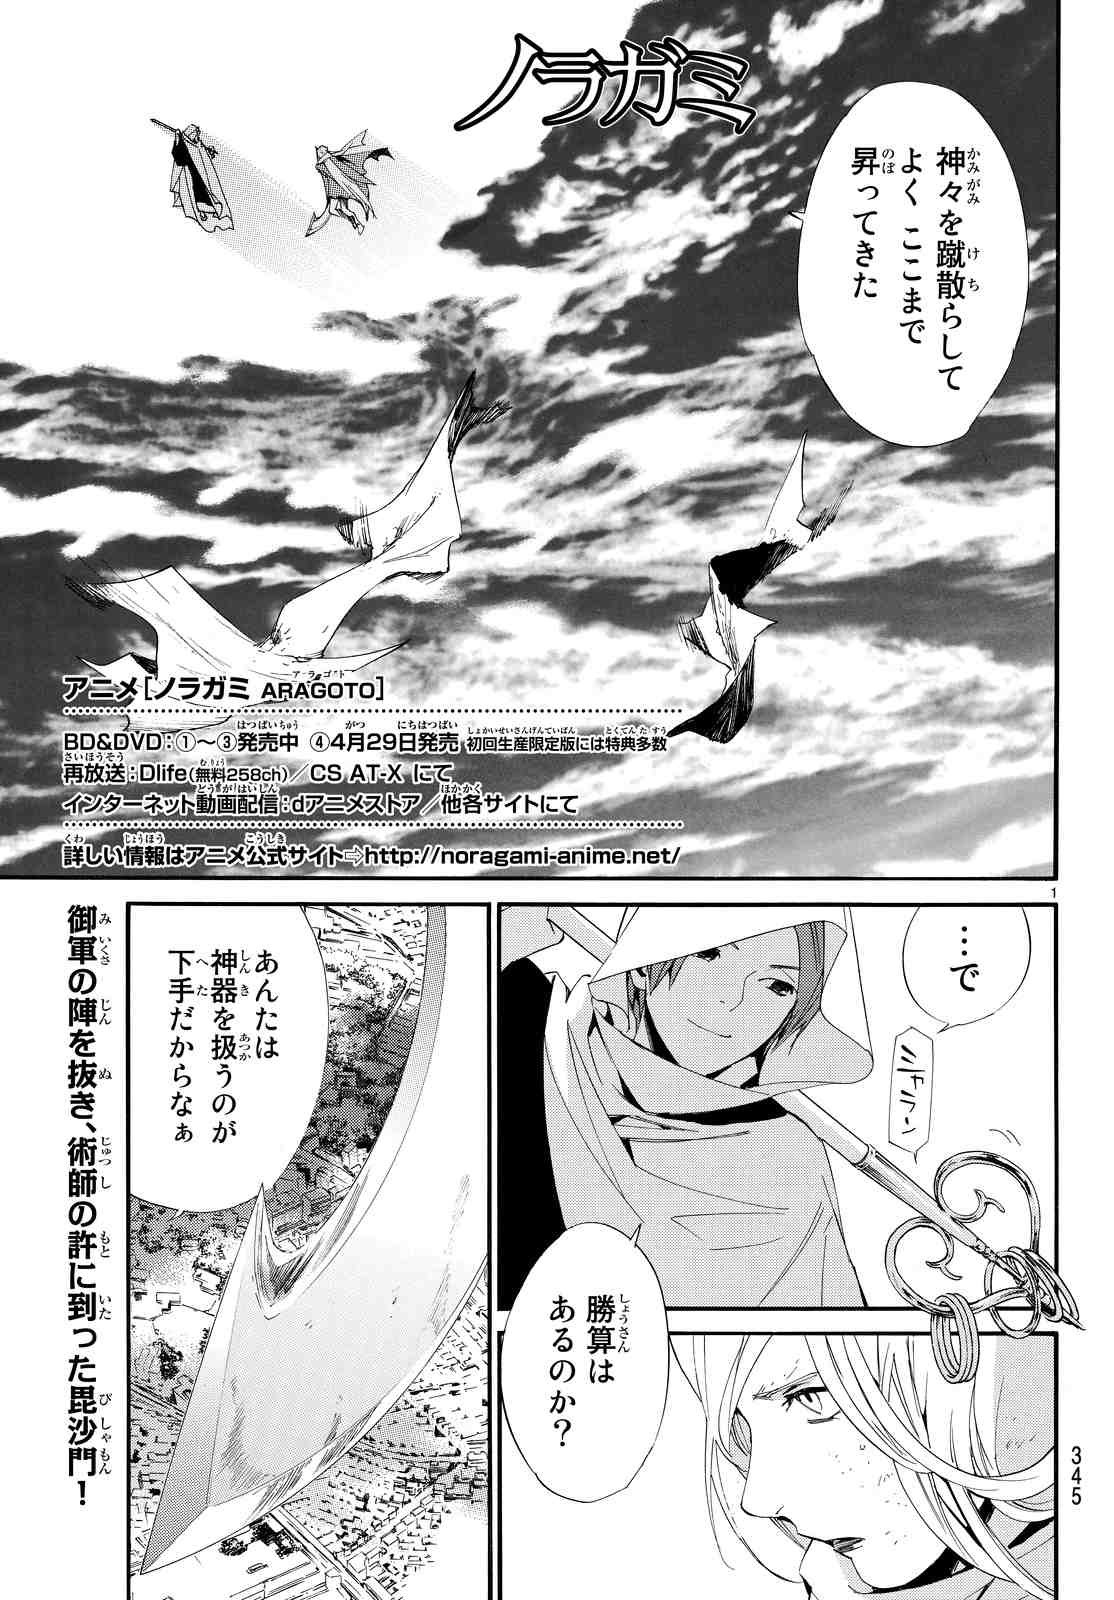 ノラガミ 44話 Manga Townまんがタウン まんがまとめ 無料コミック漫画 ネタバレ